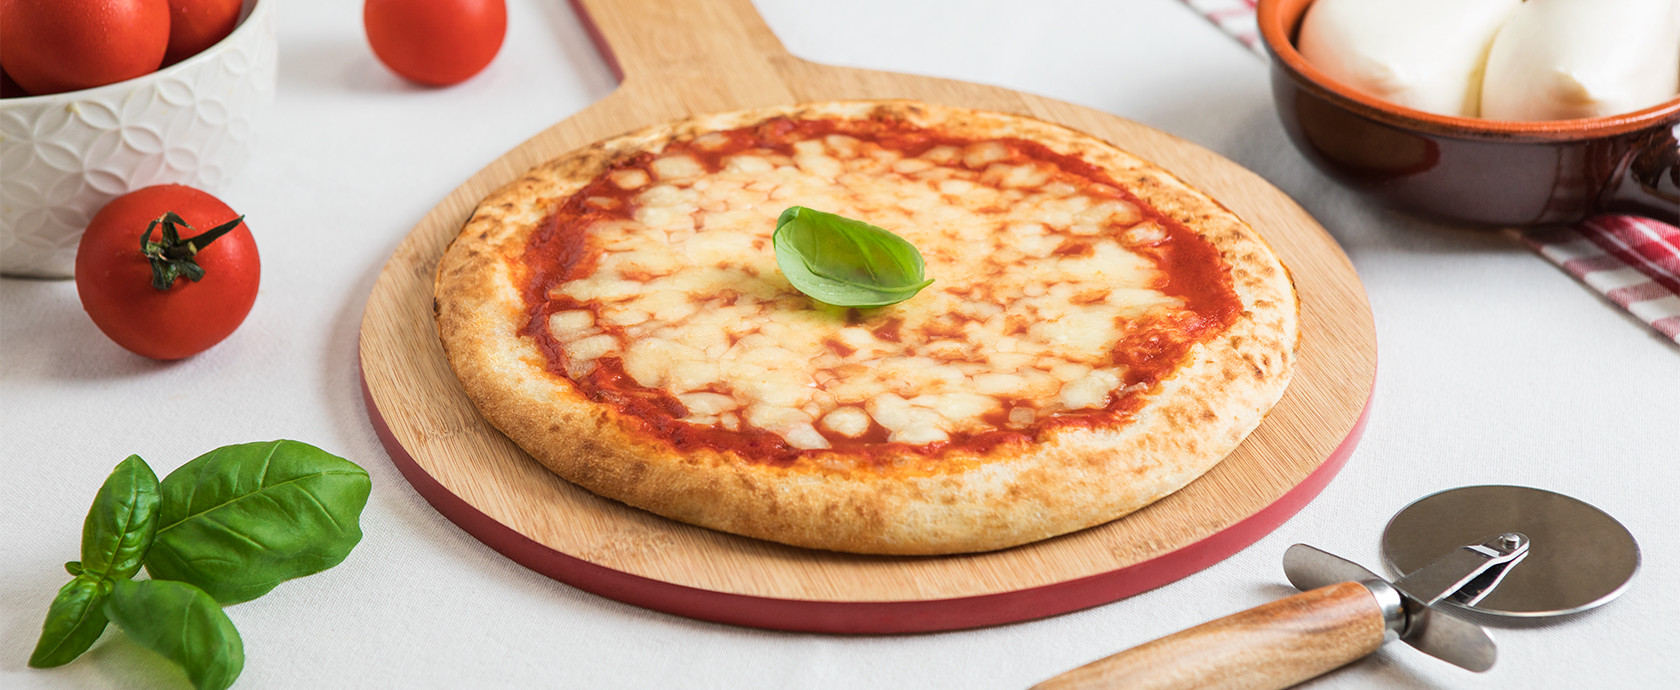 Buitoni rilancia sulla pizza con un investimento da 50 milioni